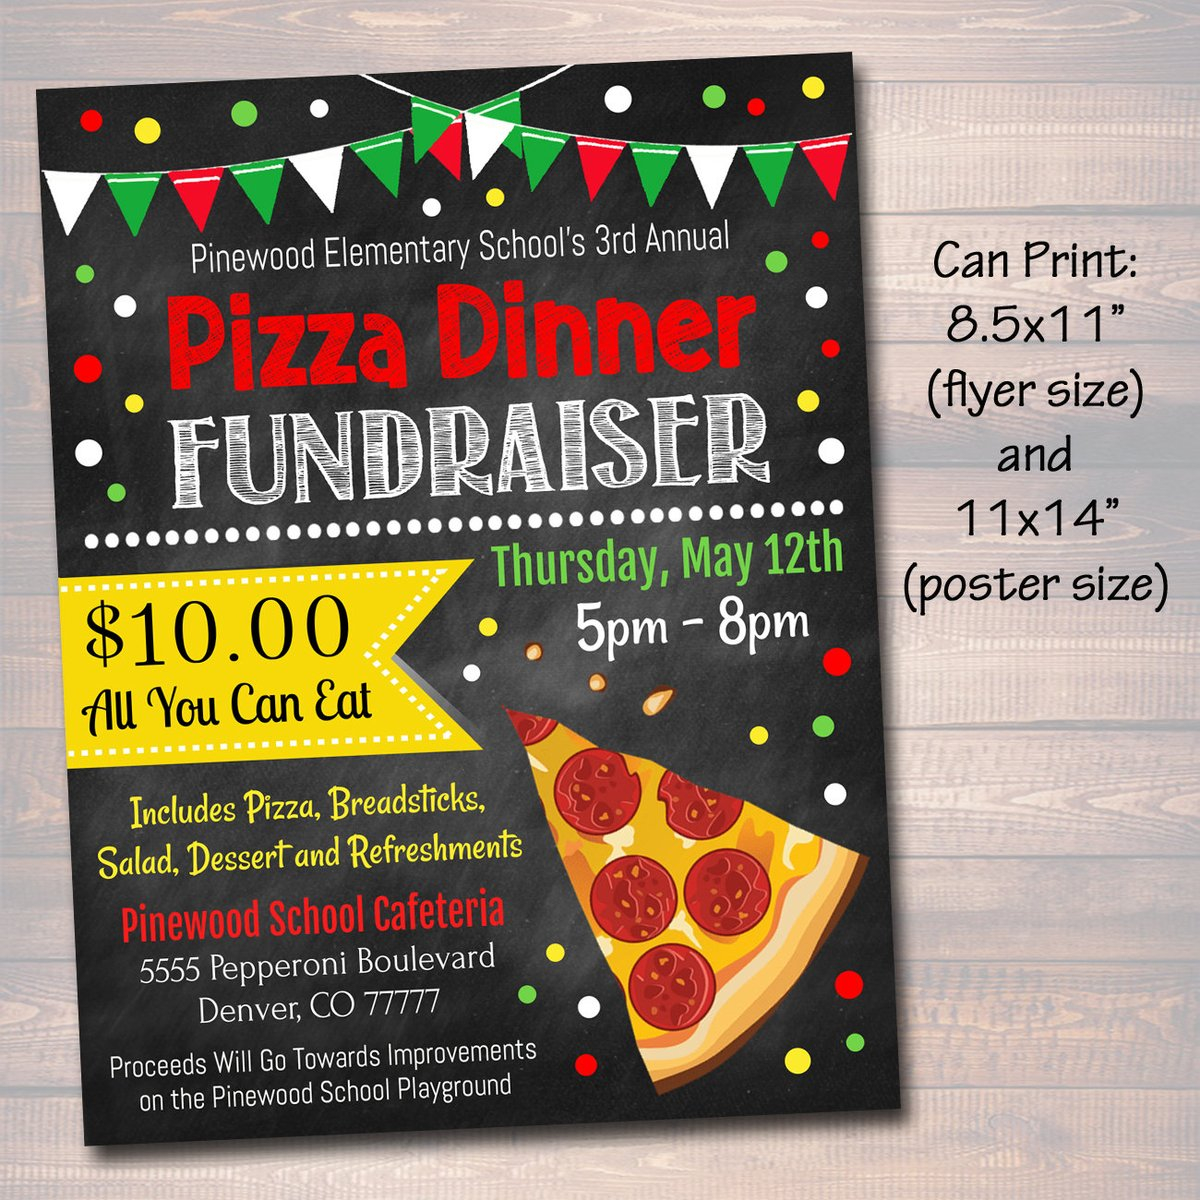 Pizza Dinner Fundraiser Flyer Ticket Set - Editable Template Within Pizza Fundraiser Flyer Template Regarding Pizza Fundraiser Flyer Template